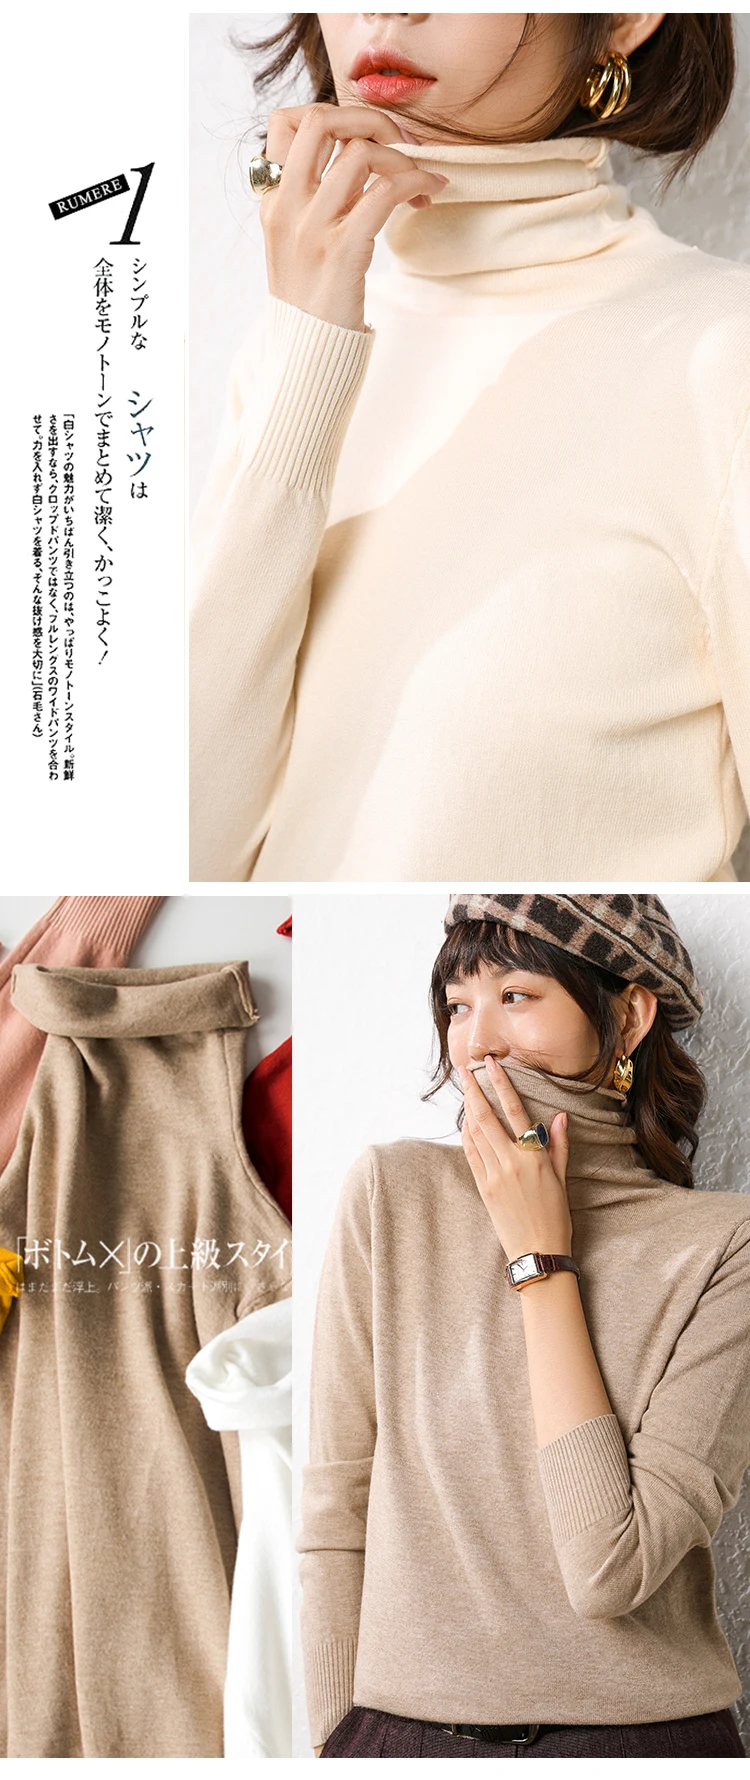 Cashmere sweater woman fashion women turtleneck cashmere sweater women knitted pullover women sweater Casual tops M-XXXL